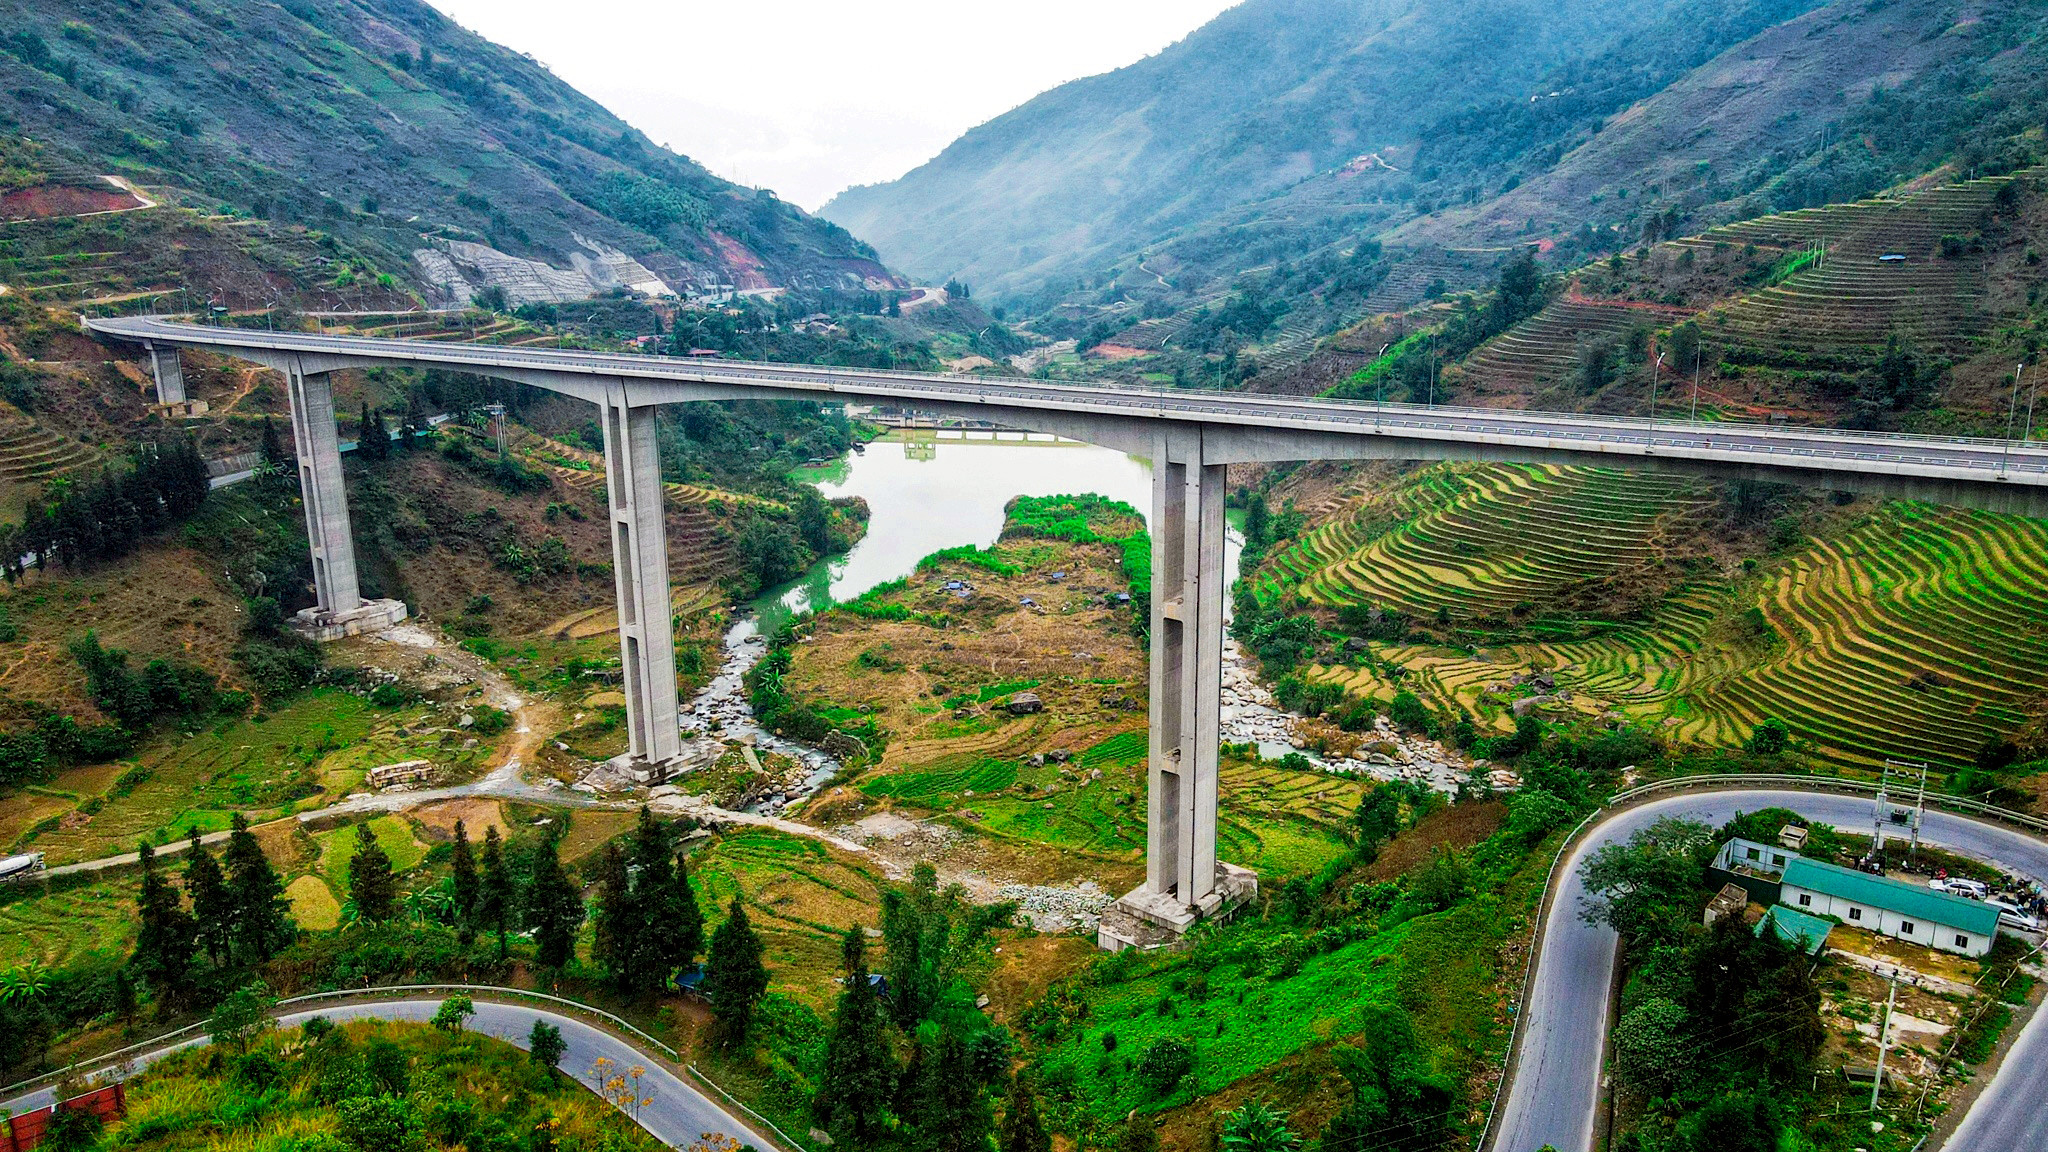 Cây cầu cạn có trụ cao 83m sừng sững giữa núi rừng Lào Cai